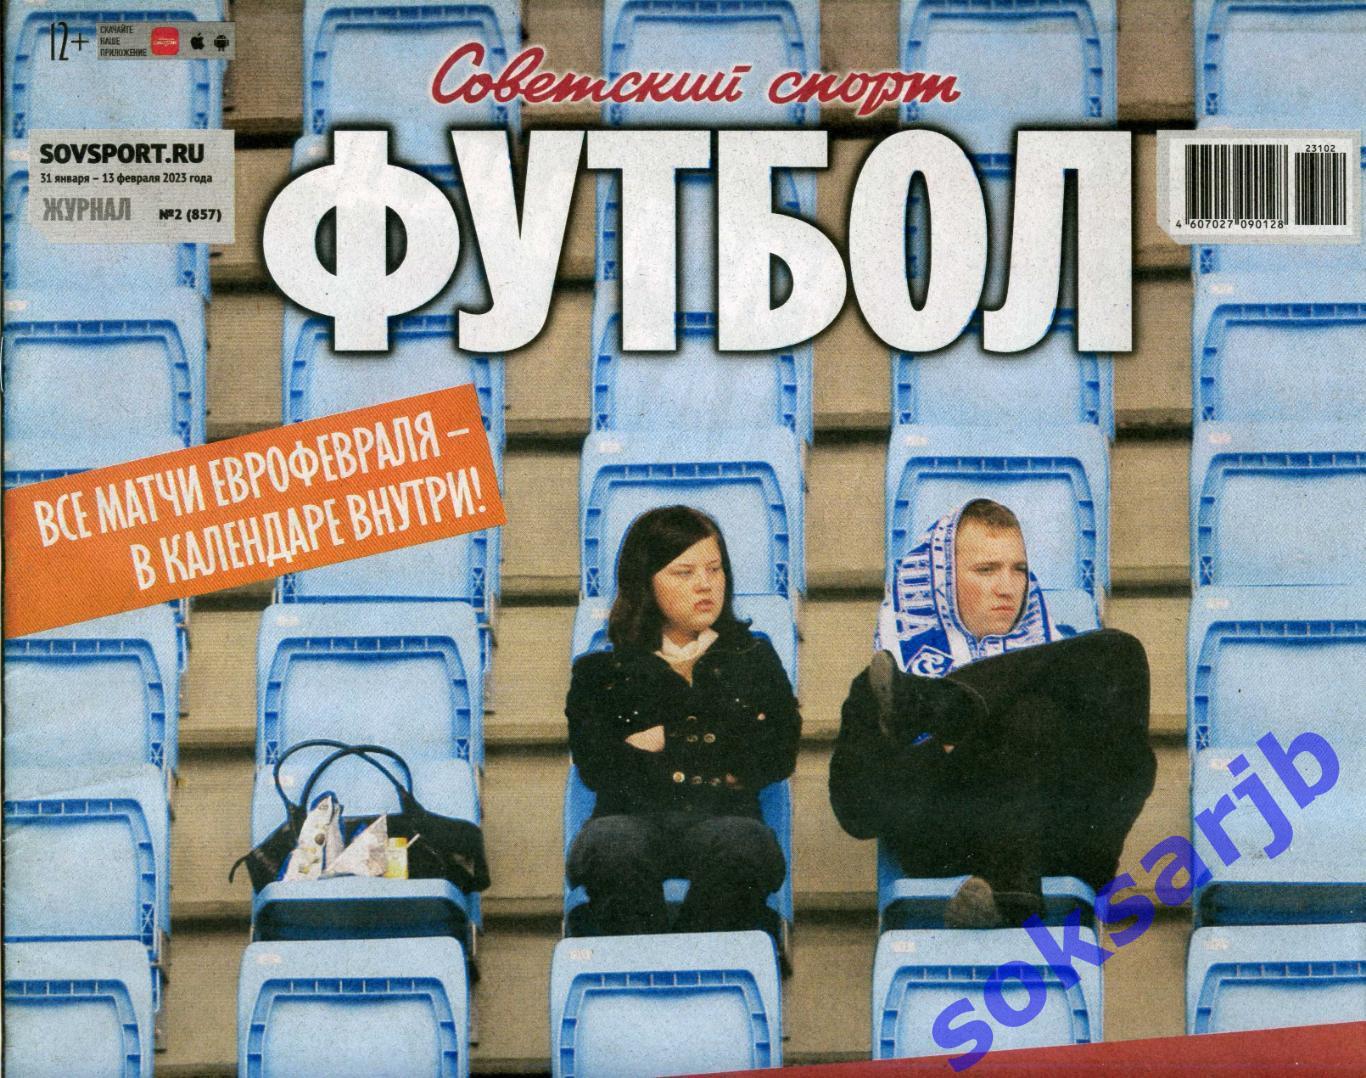 2023. Еженедельник Советский спорт - Футбол № 2 (857).